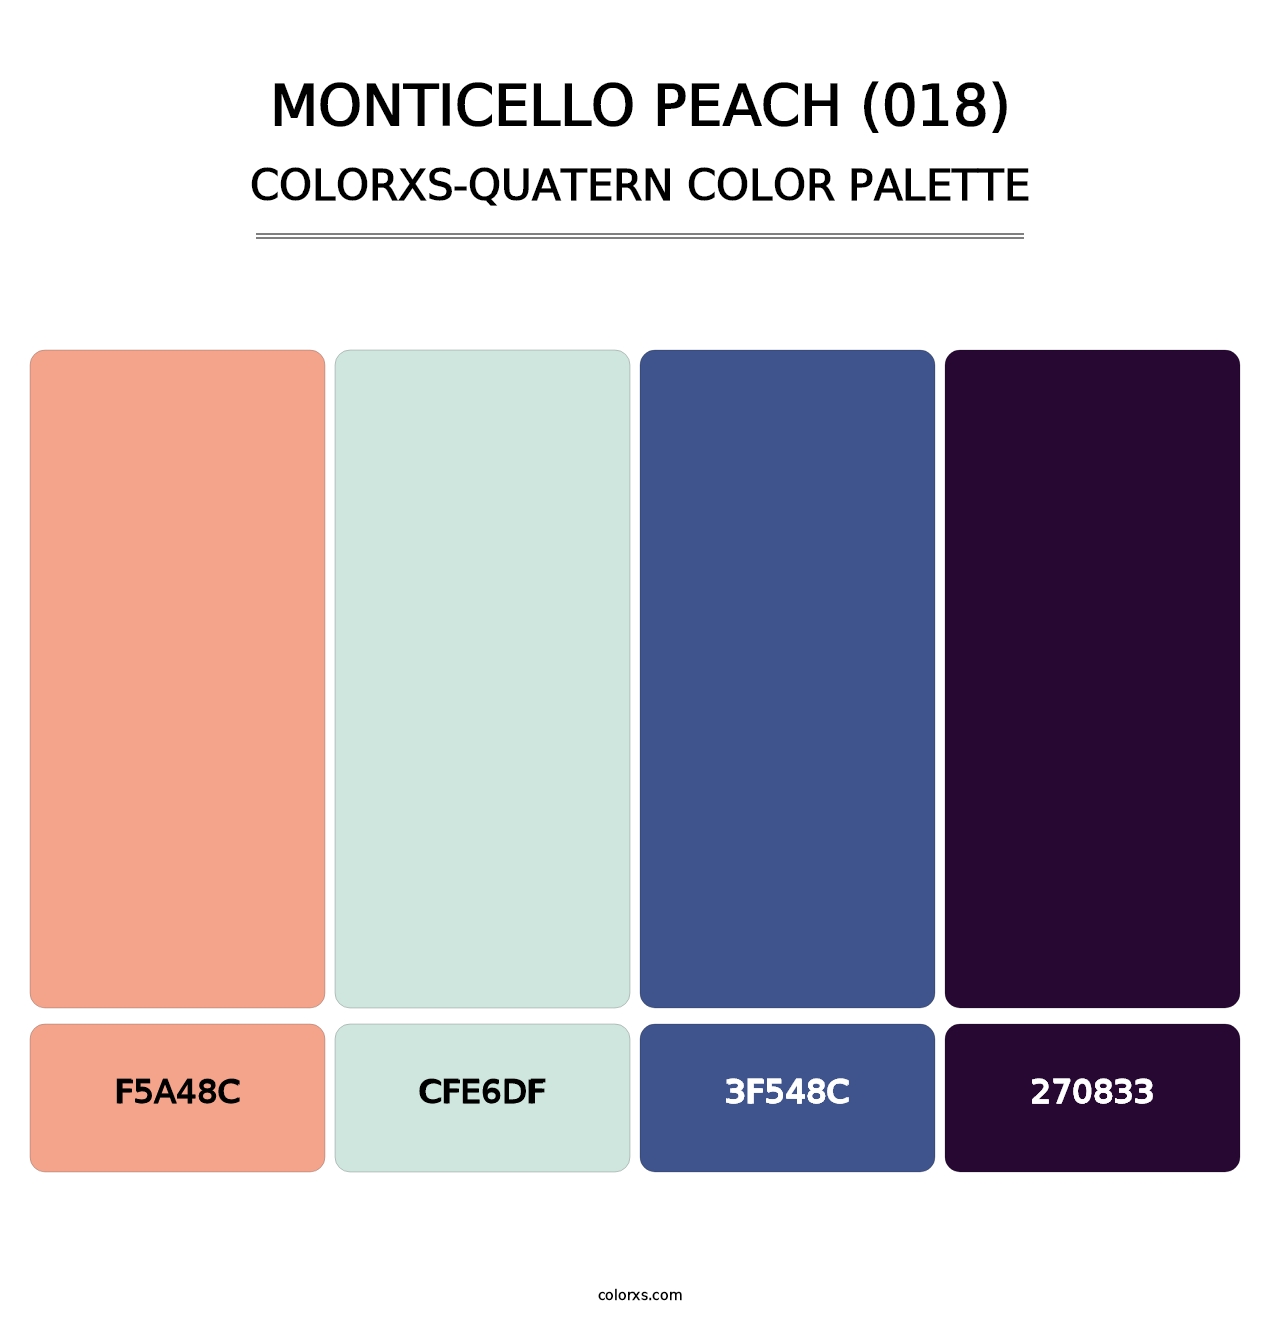 Monticello Peach (018) - Colorxs Quatern Palette